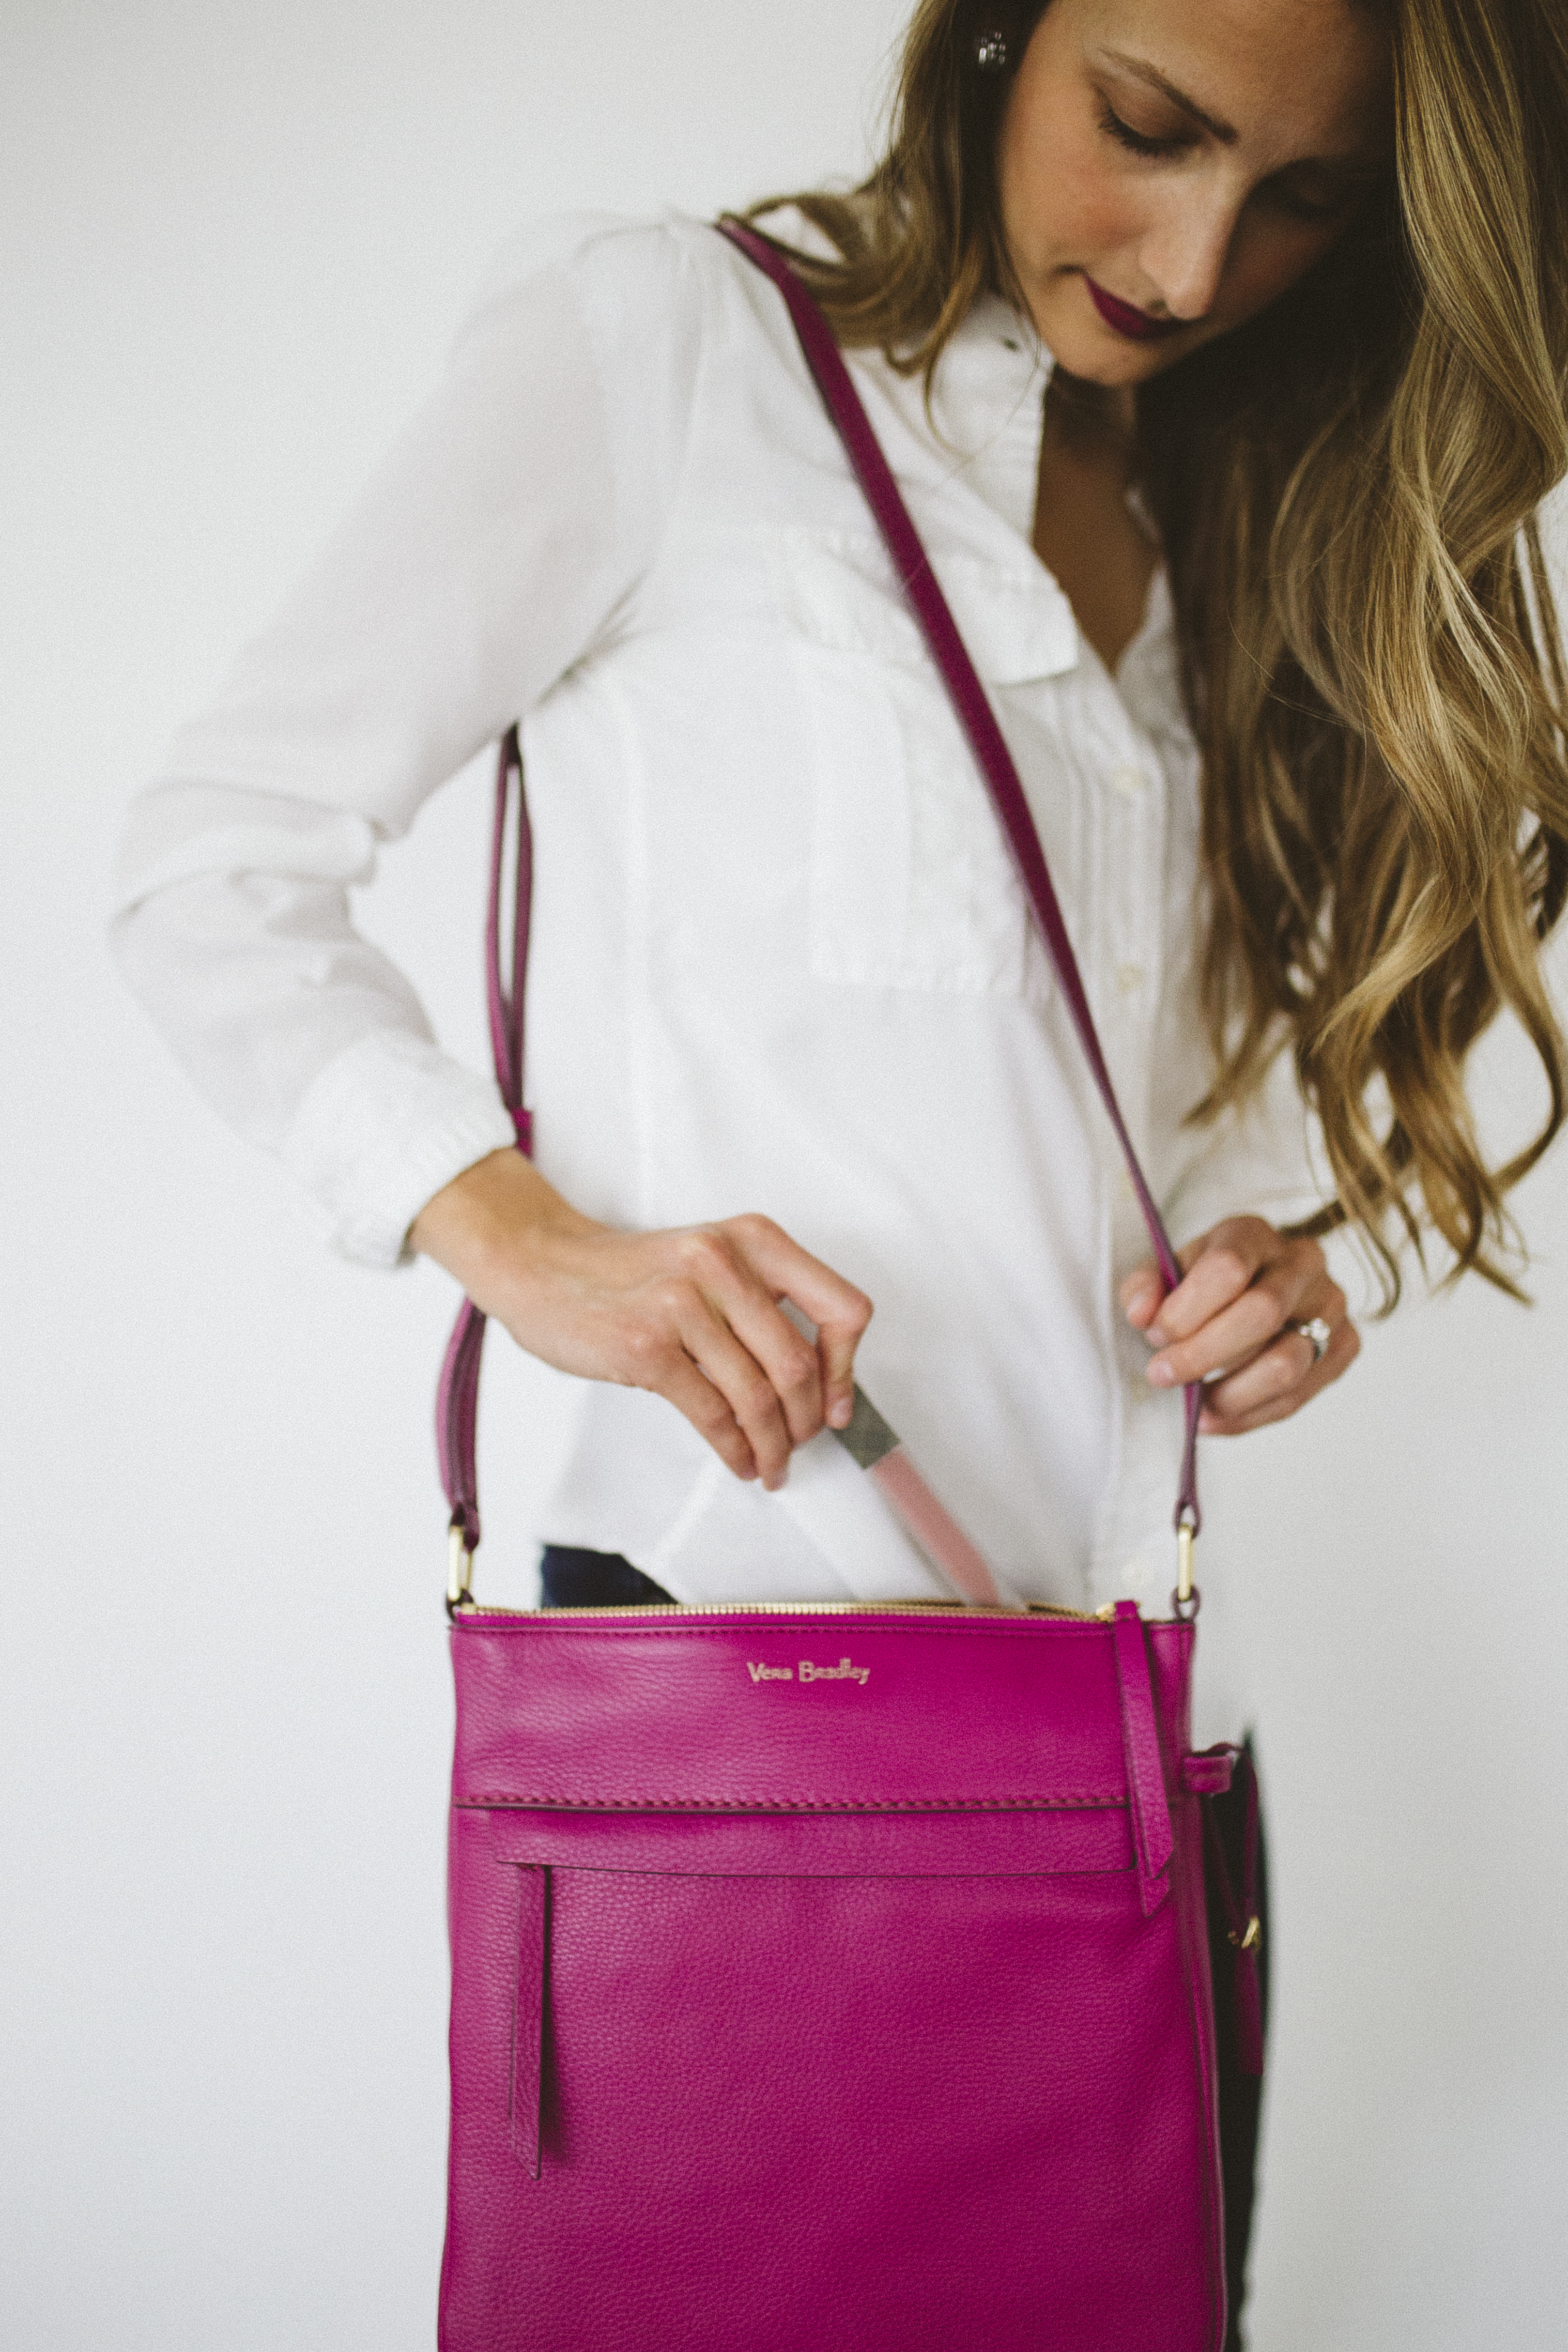 What type of handbag do you prefer? - Quora